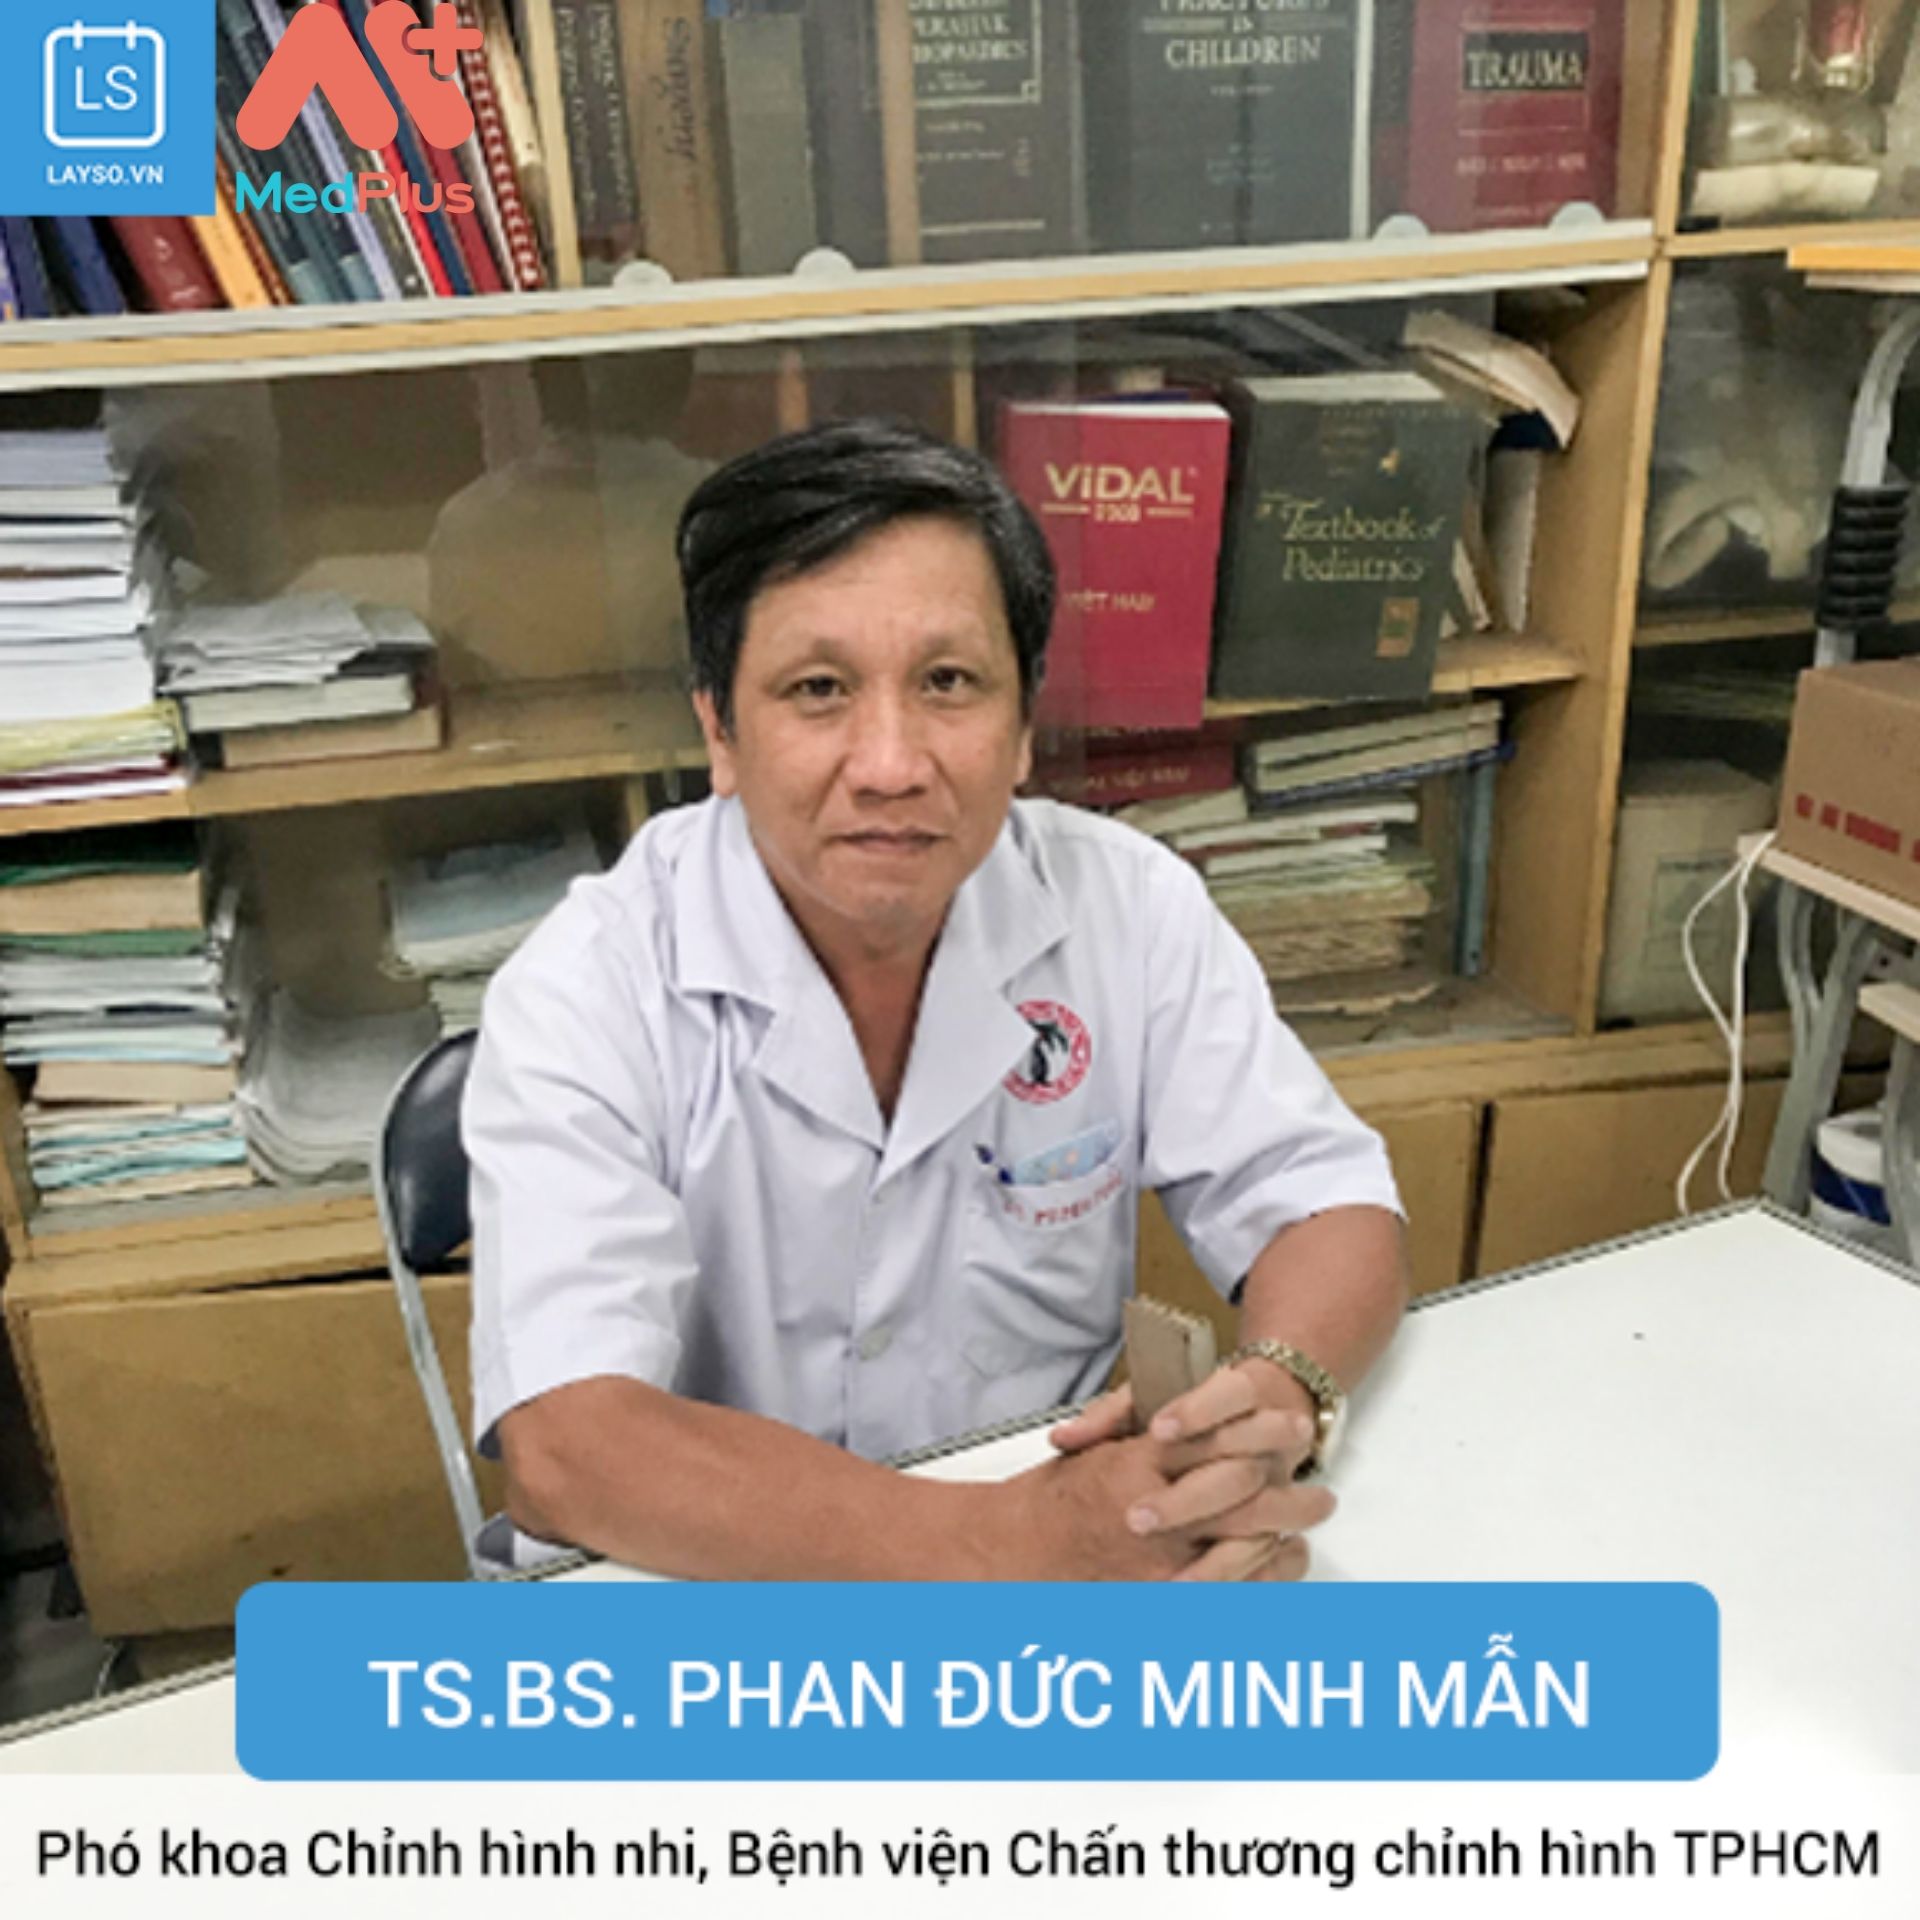 Bác sĩ Phan Đức Minh Mẫn